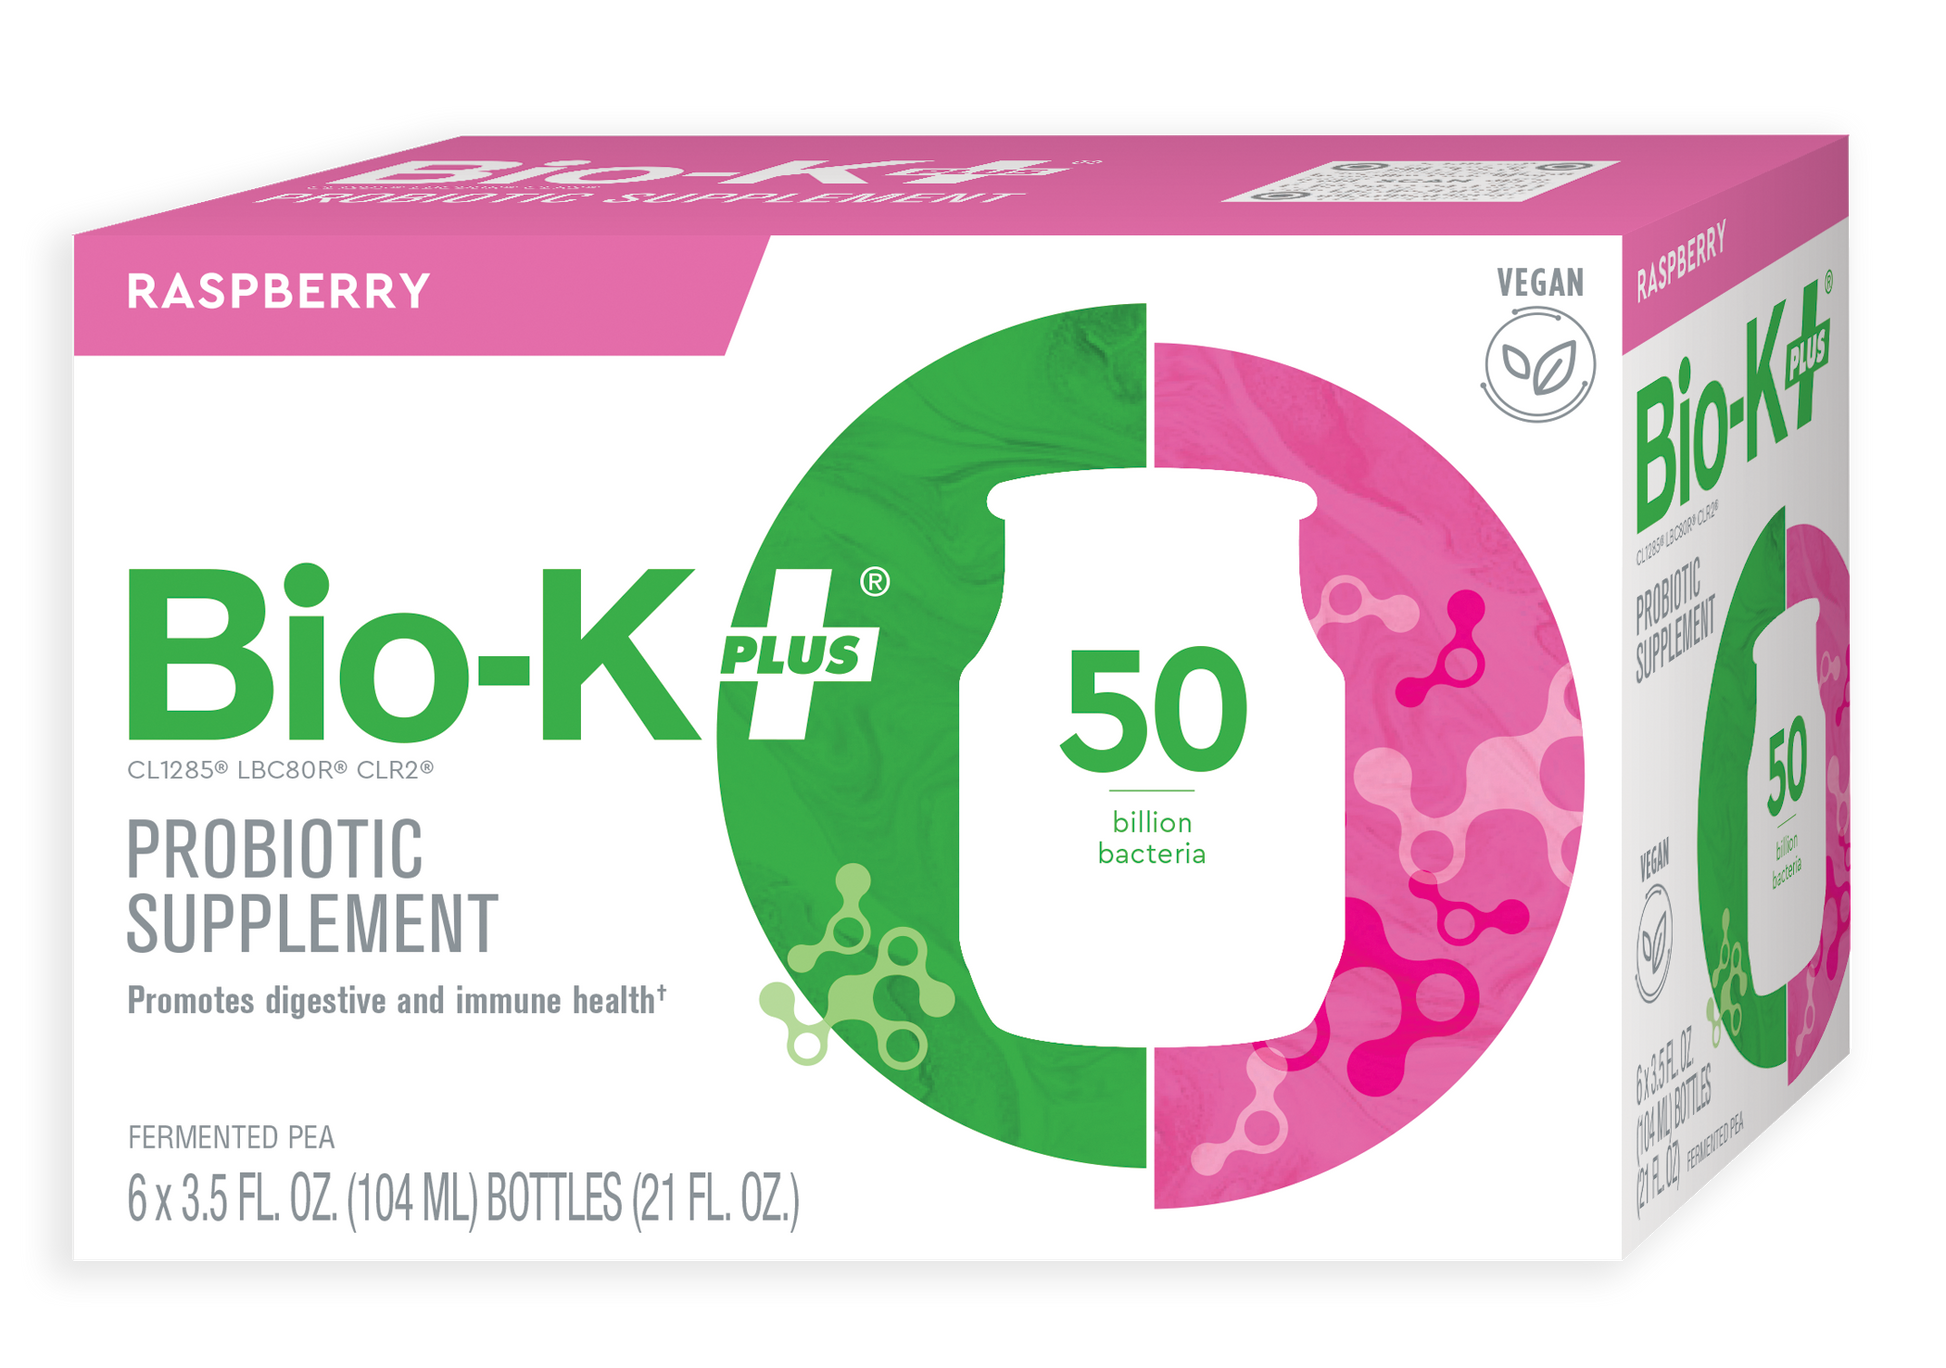 6-pack of Bio-K+ Raspberry FERMENTED PEA VEGAN DRINKABLE PROBIOTIC